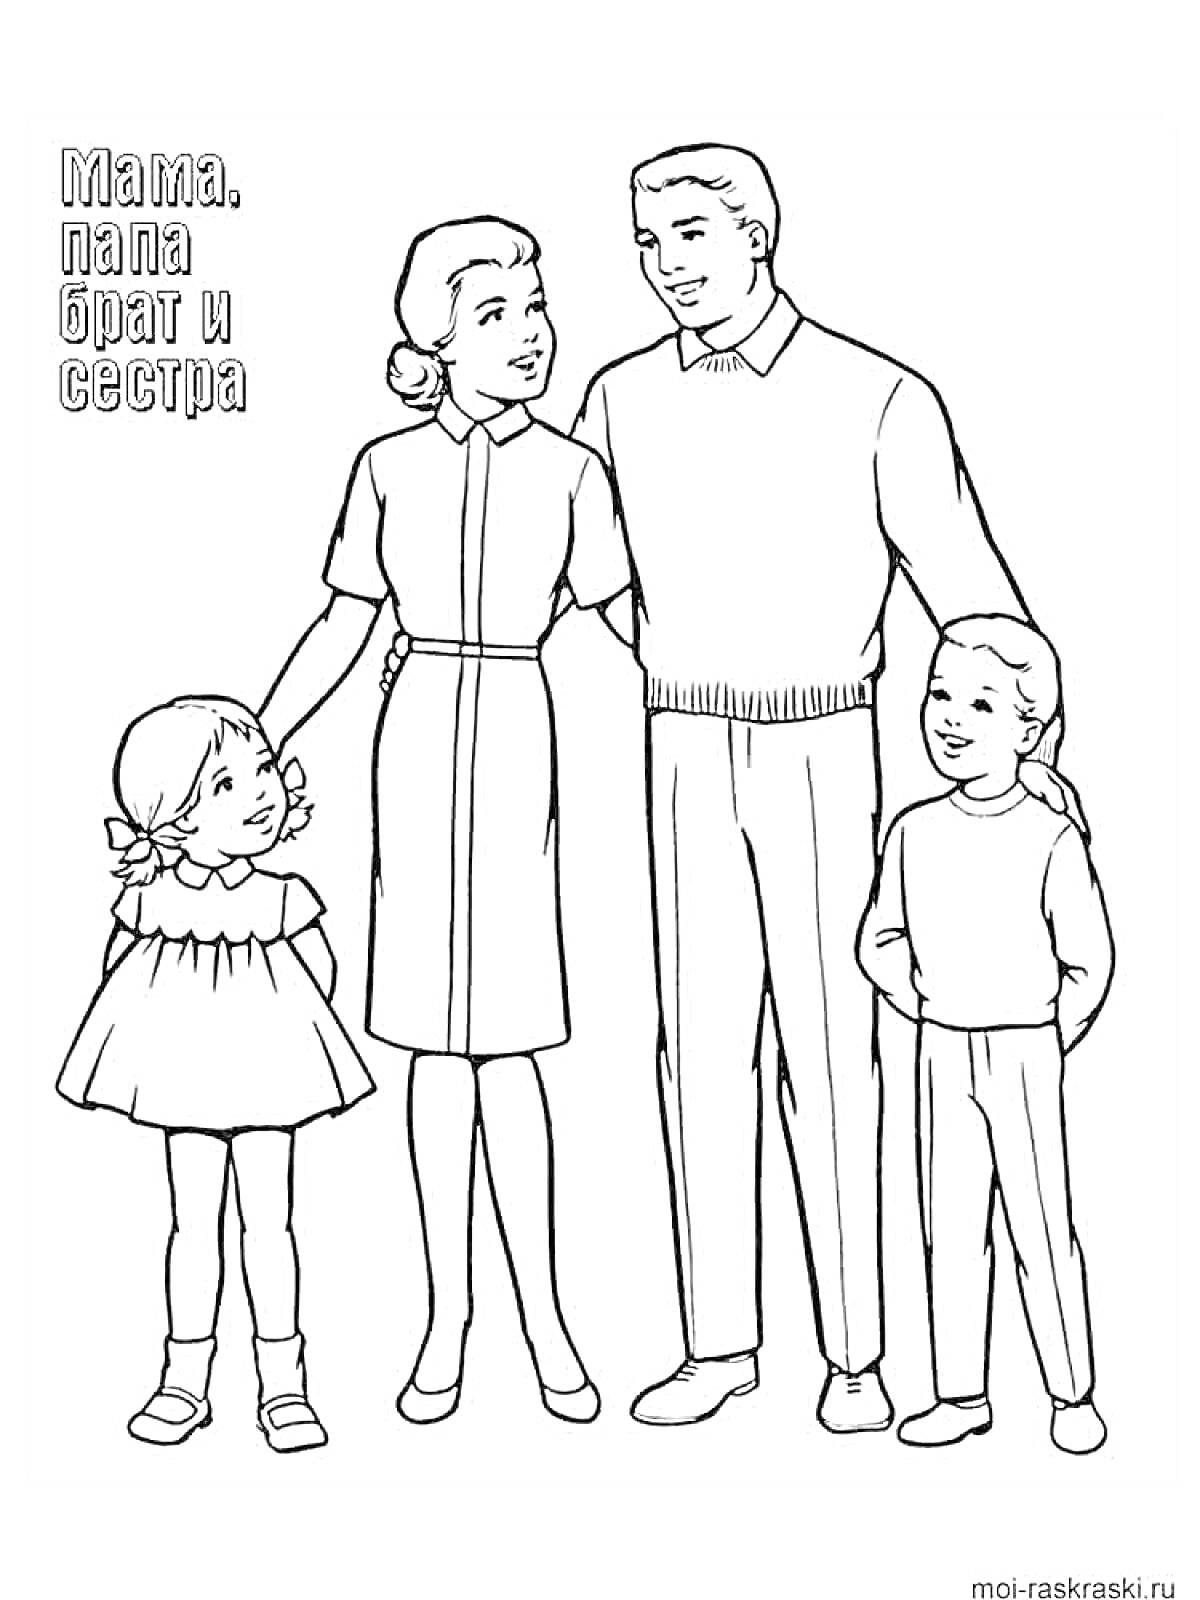 Раскраска Семейный портрет: мама, папа, брат и сестра